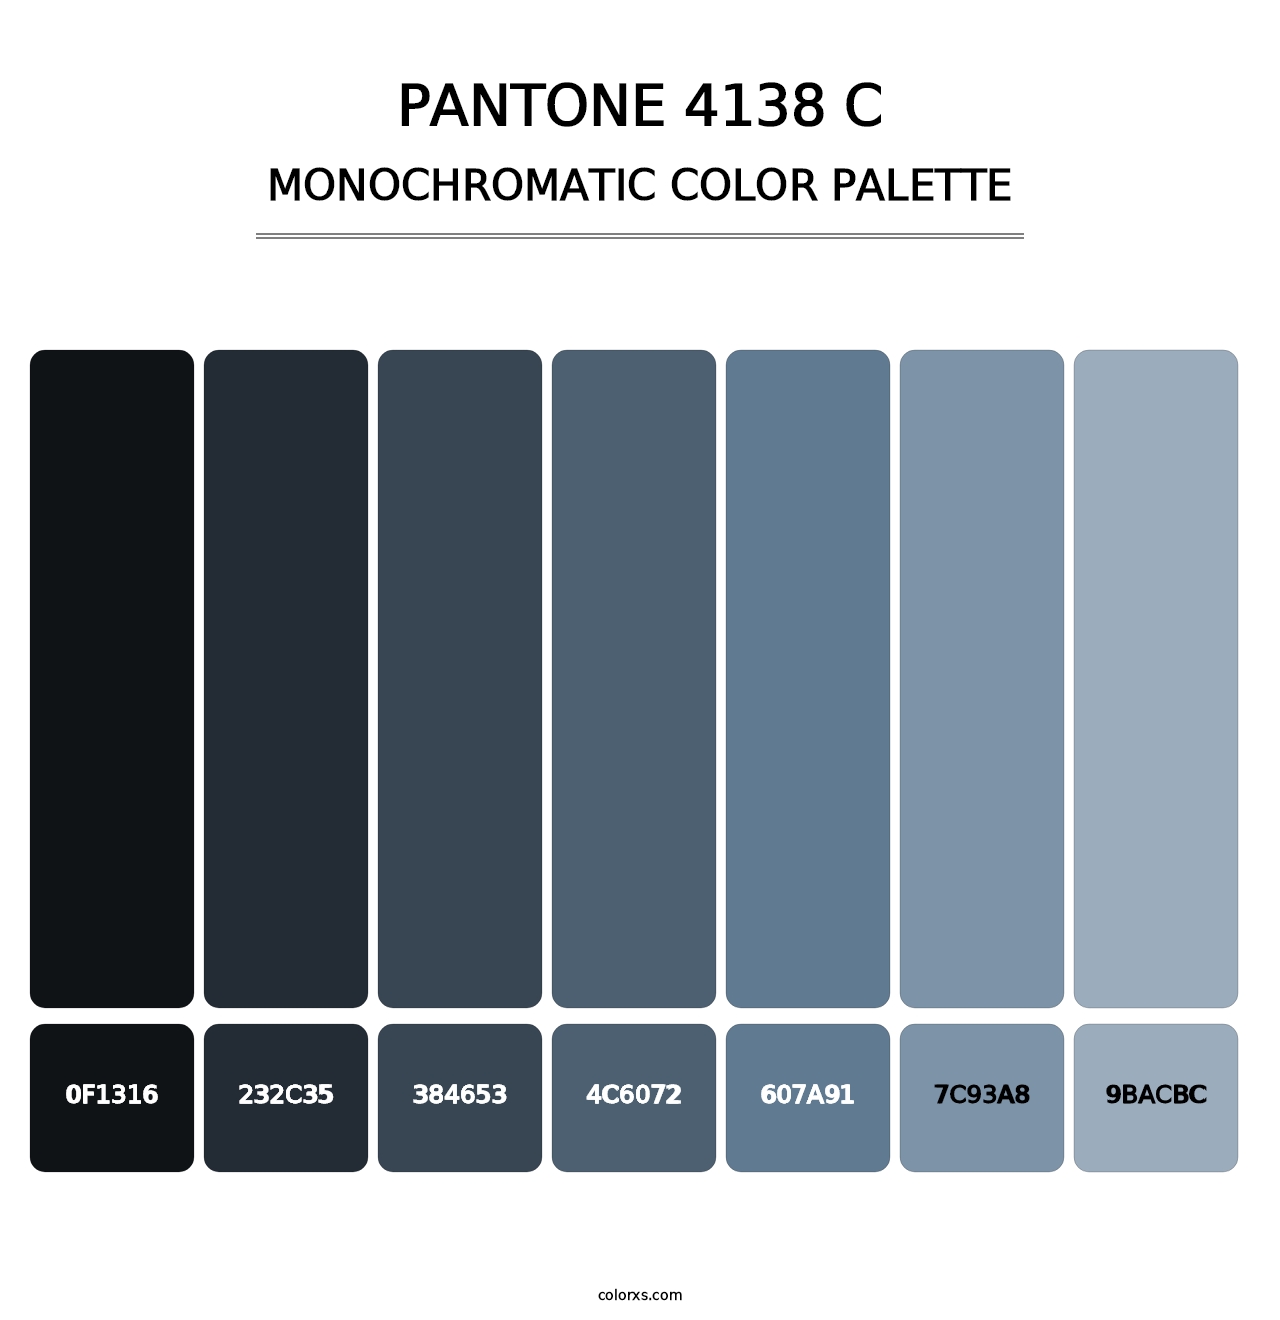 PANTONE 4138 C - Monochromatic Color Palette